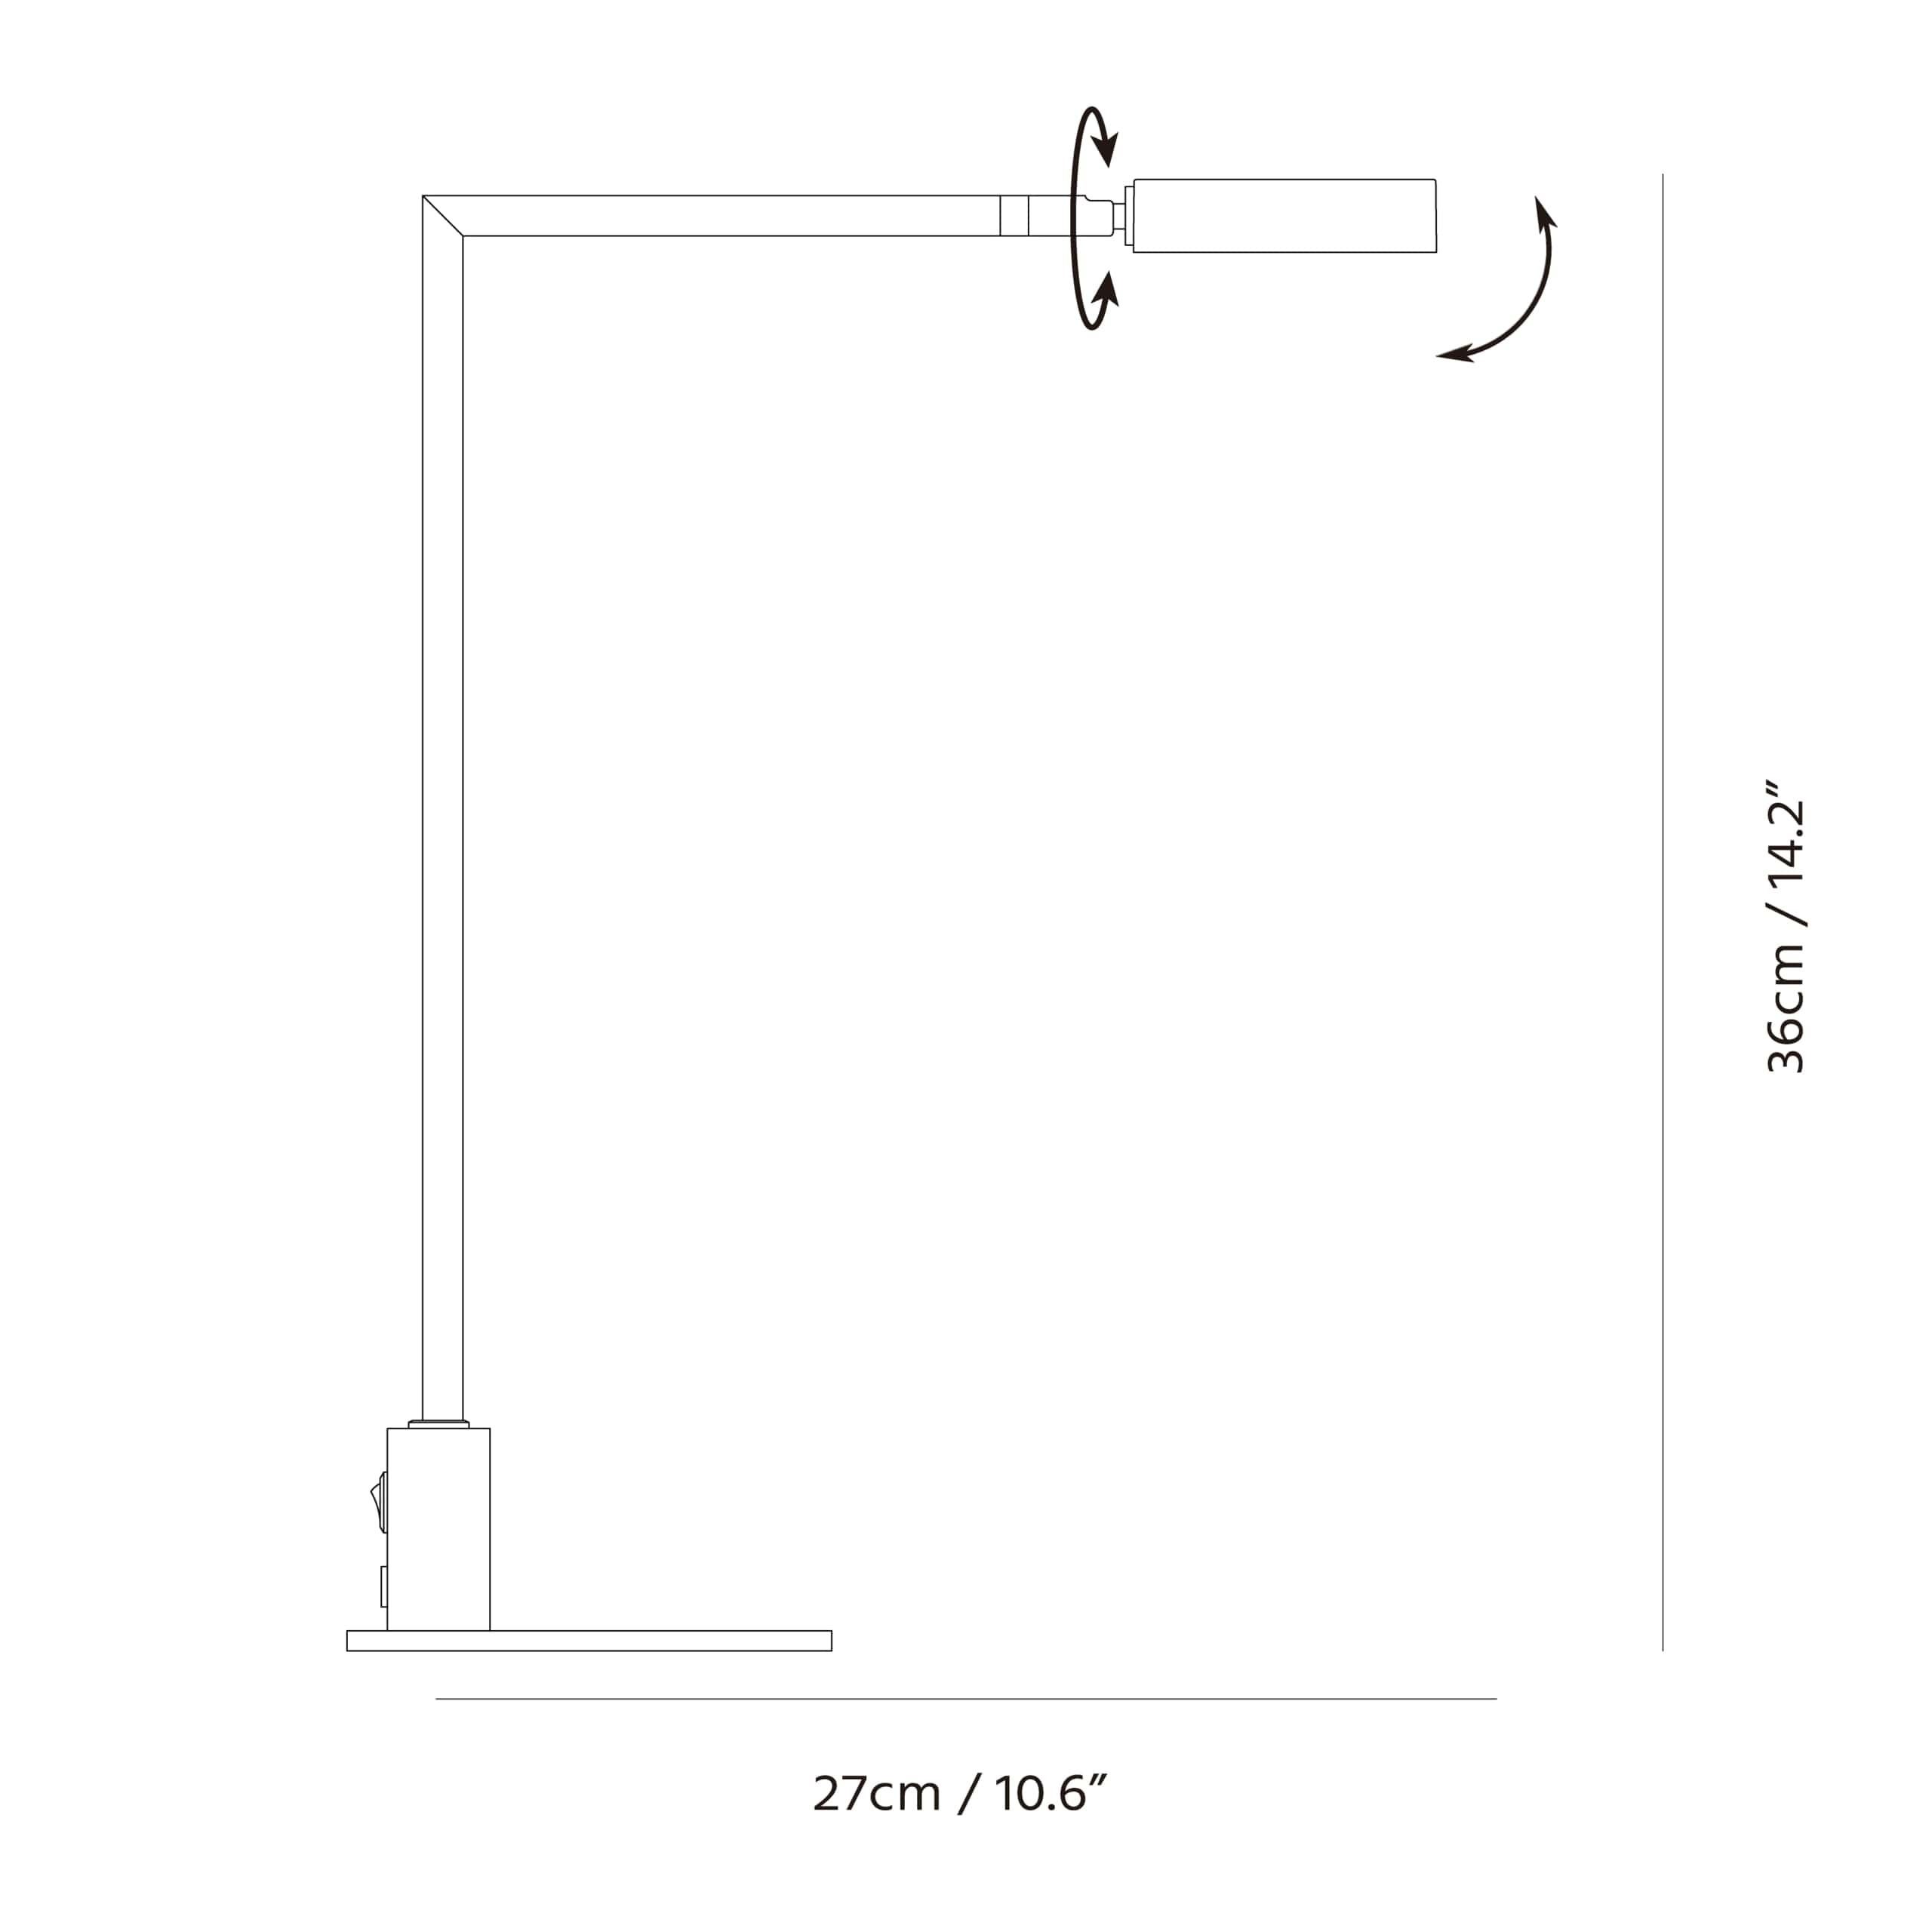 La lampe de table carrée illustre comment les designs les plus simples sont toujours sans effort et évolutifs. Square intègre un éclairage LED qui nécessite moins d'énergie et permet d'économiser 80 % d'énergie. Square offre une flexibilité